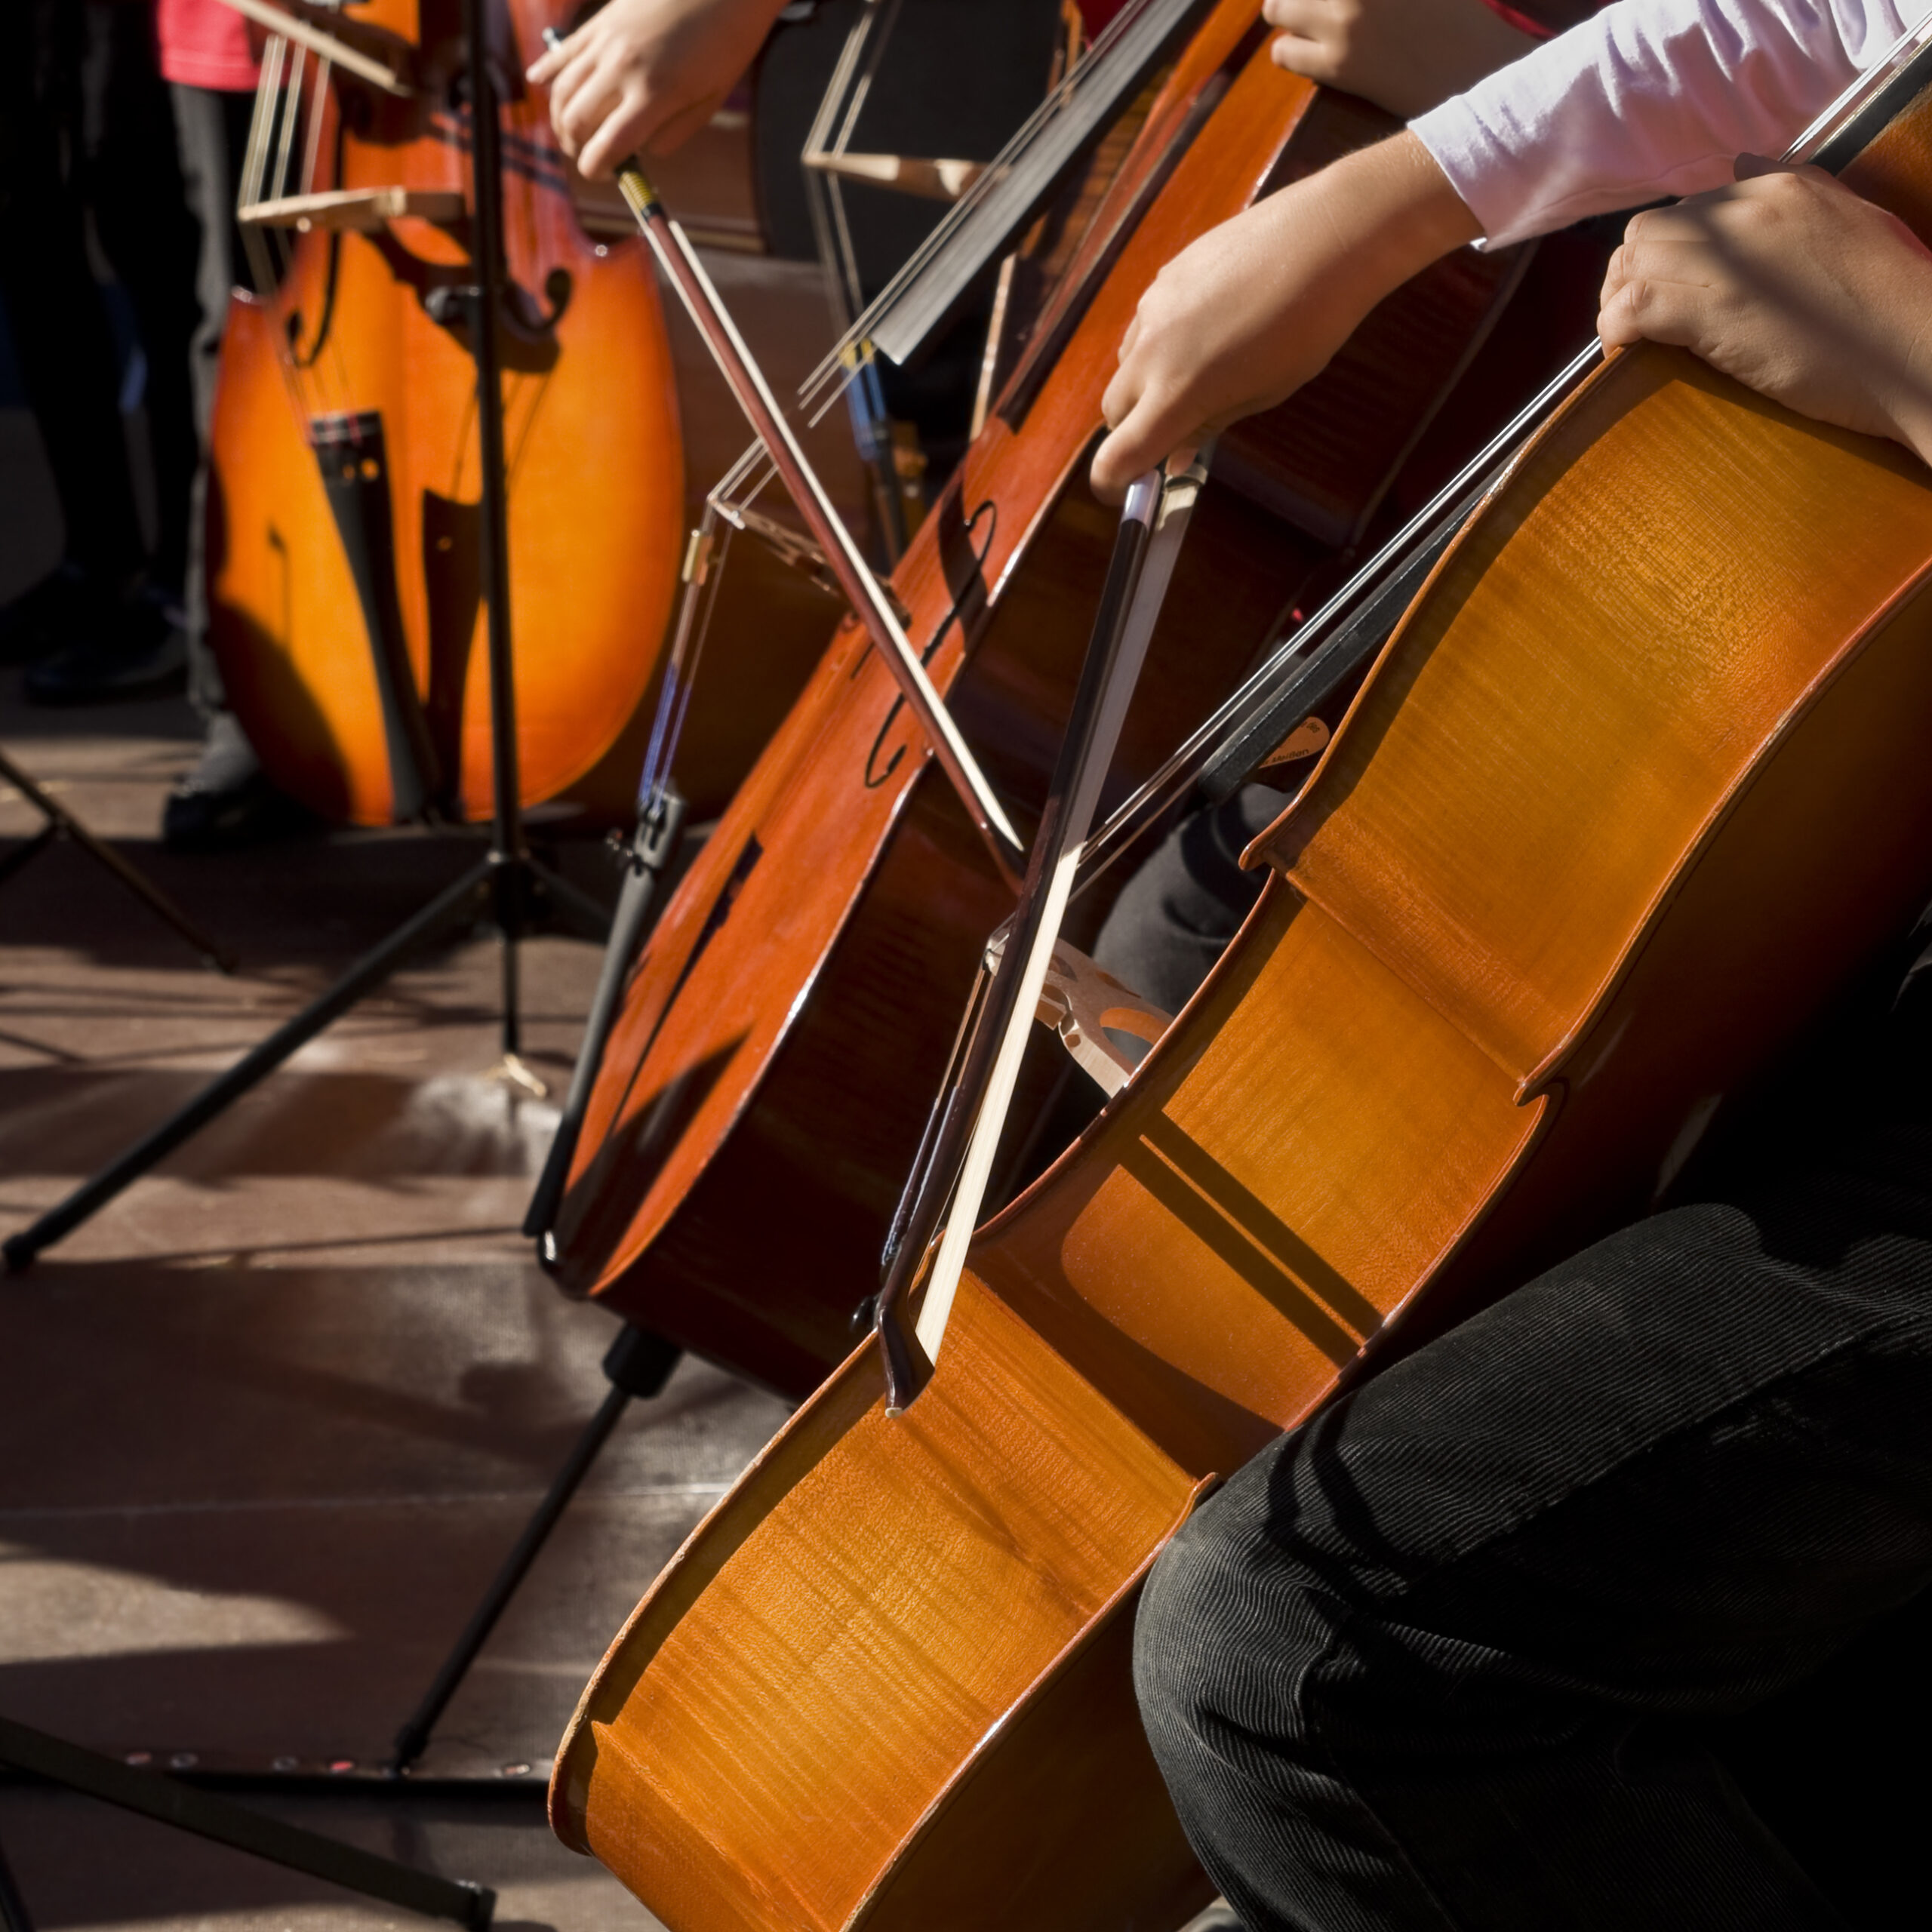 Cello players